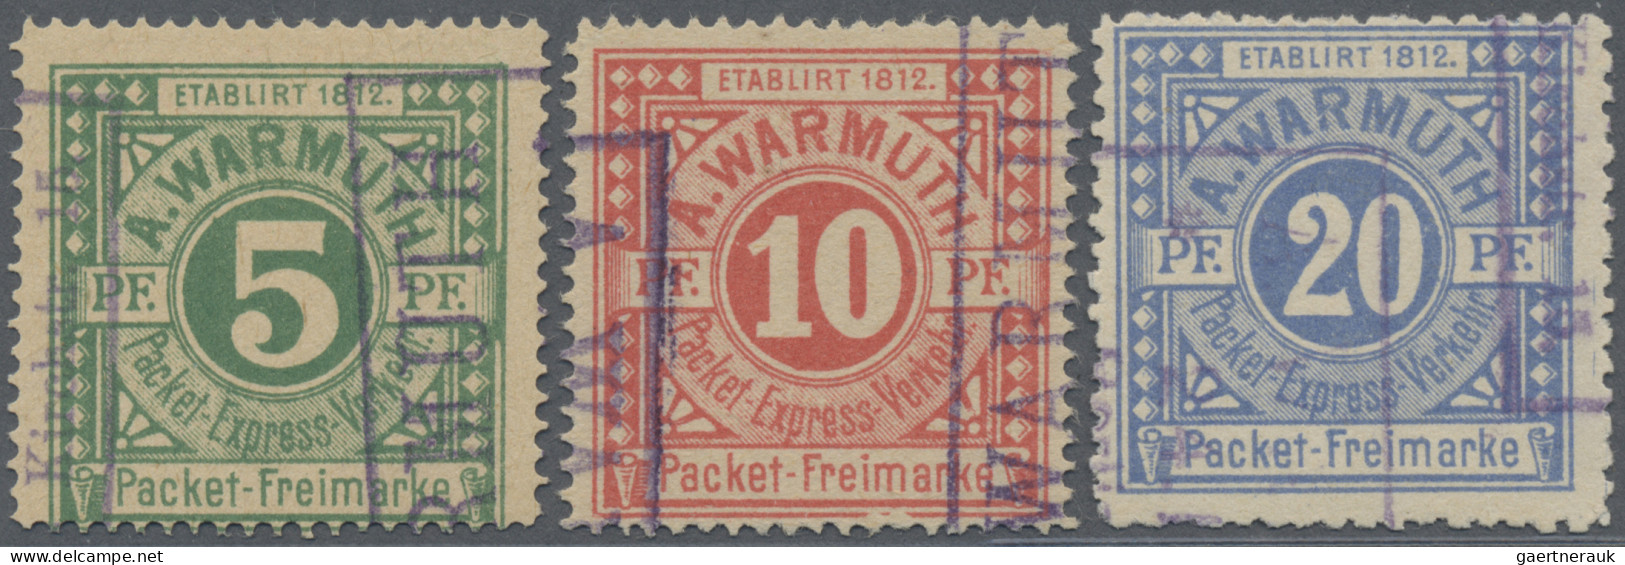 Deutsches Reich - Privatpost (Stadtpost): BERLIN: 1890 A. Warmuth Packet-Verkehr - Privatpost